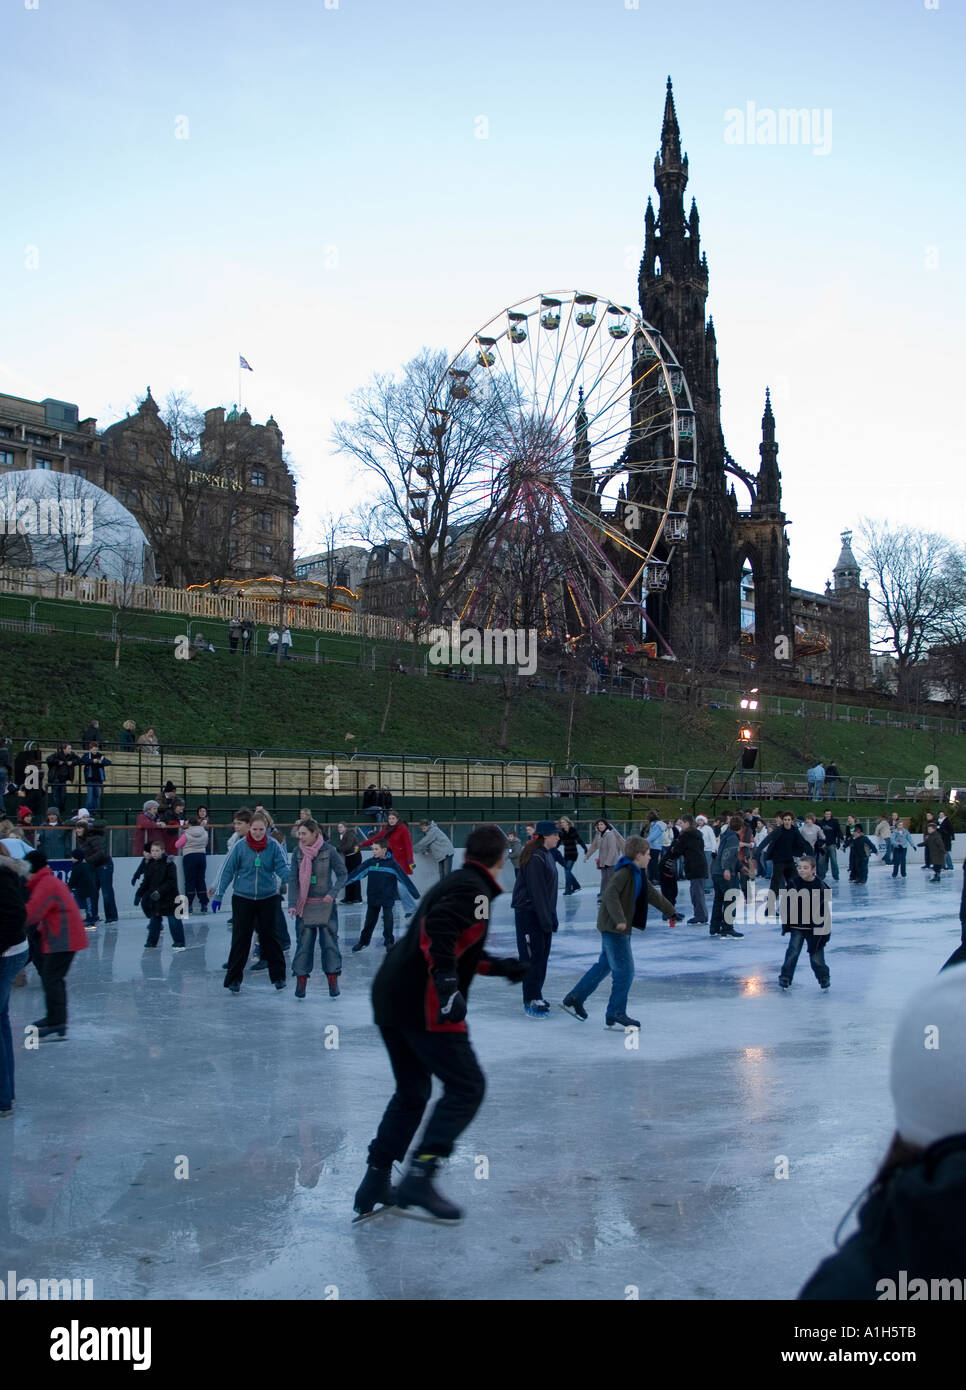 Outdoor-Eisbahn im Stadtzentrum von Edinburgh, Schottland Stockfoto